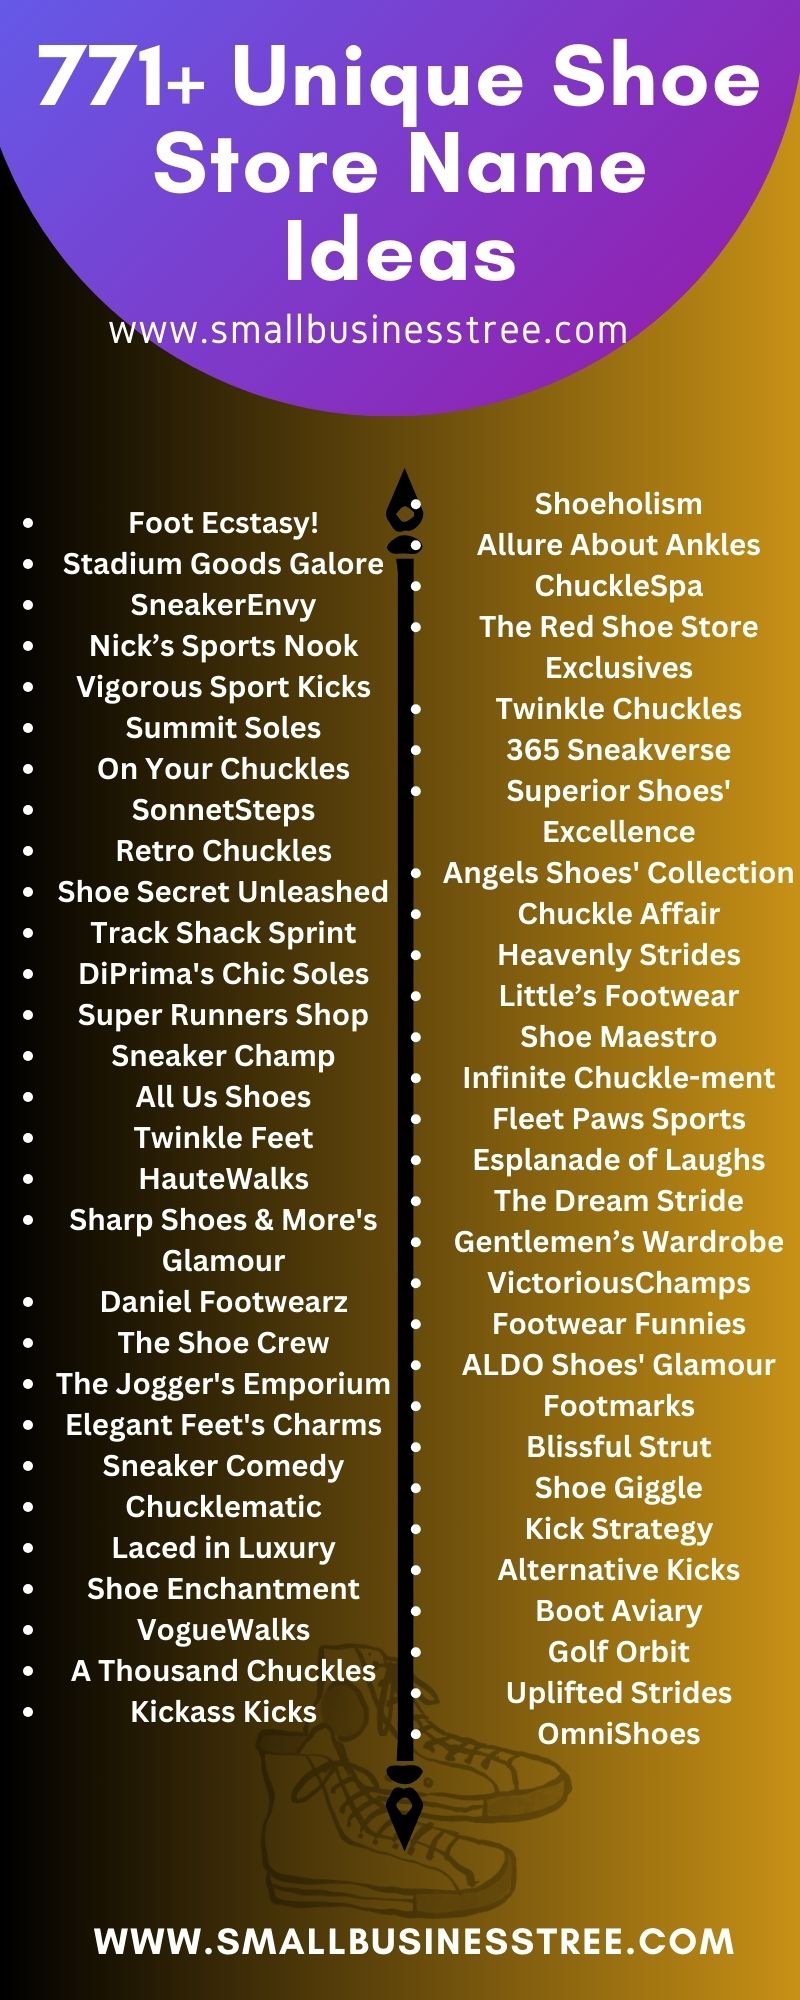 Unique Shoe Store Name Ideas